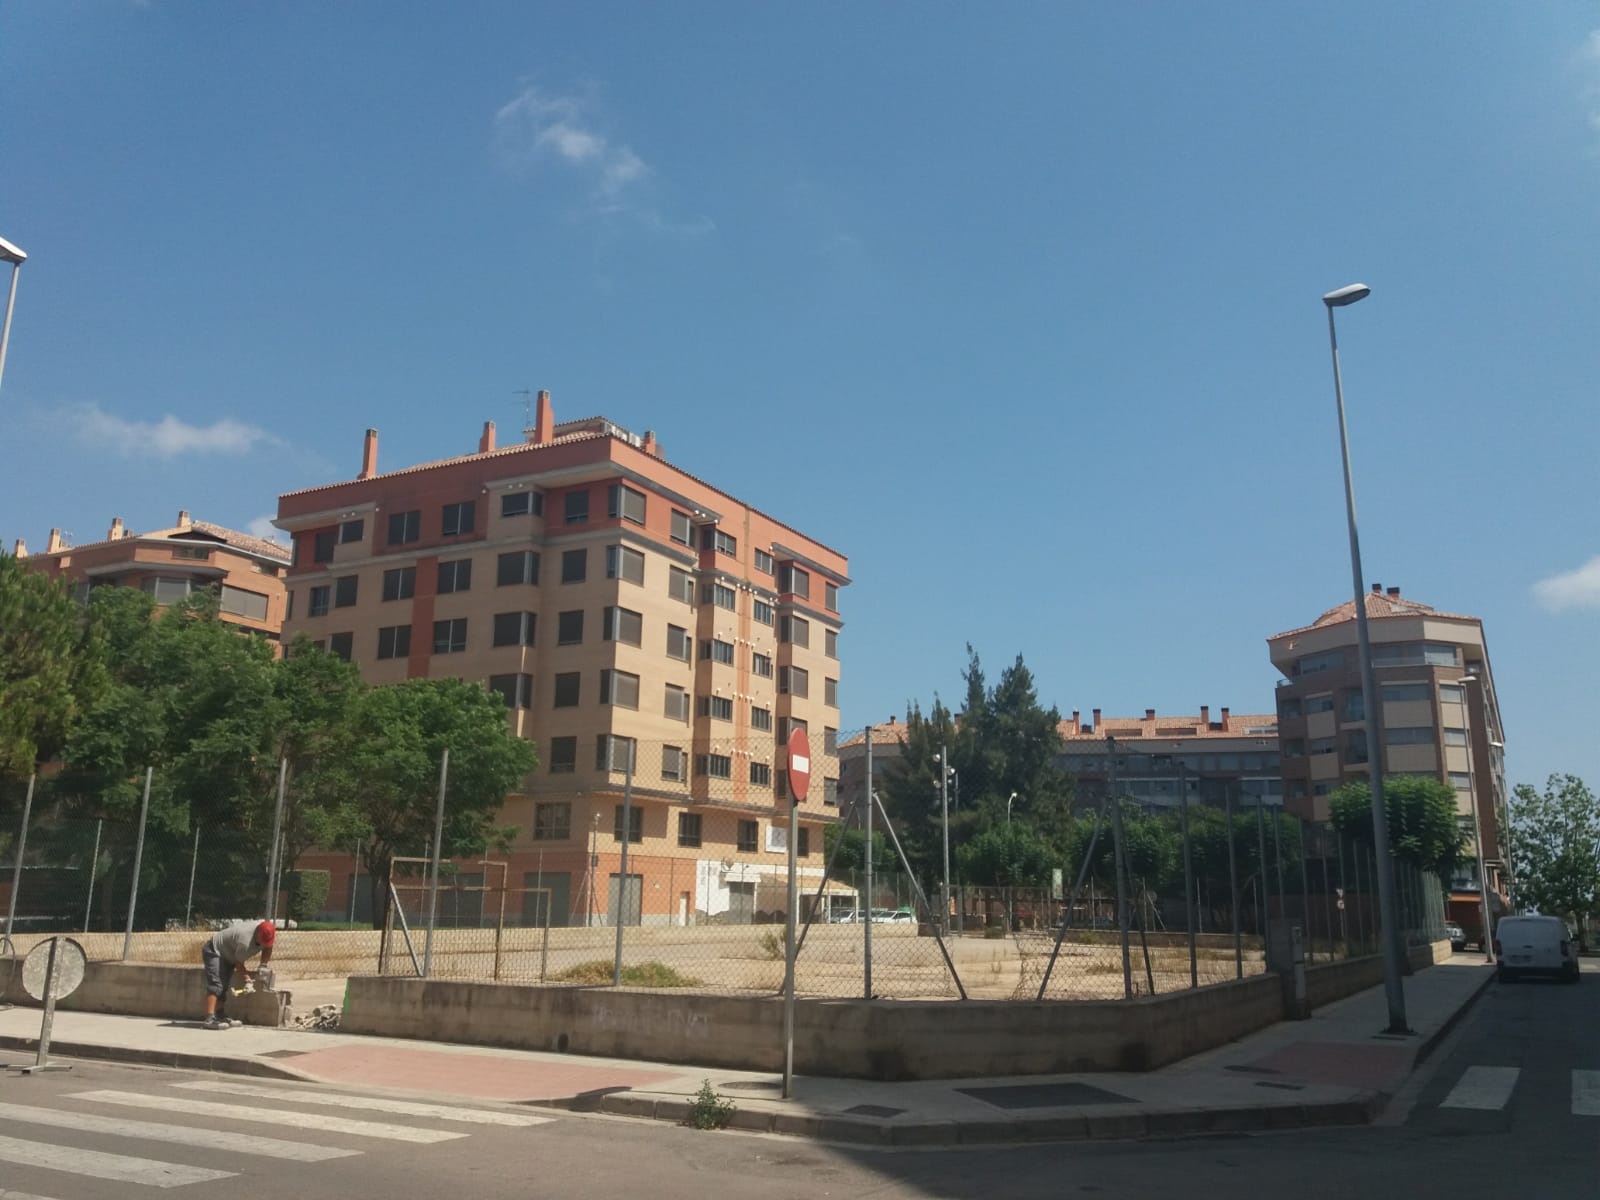 Territorio habilita un nuevo aparcamiento con 52 plazas en la calle Jaume Roig.